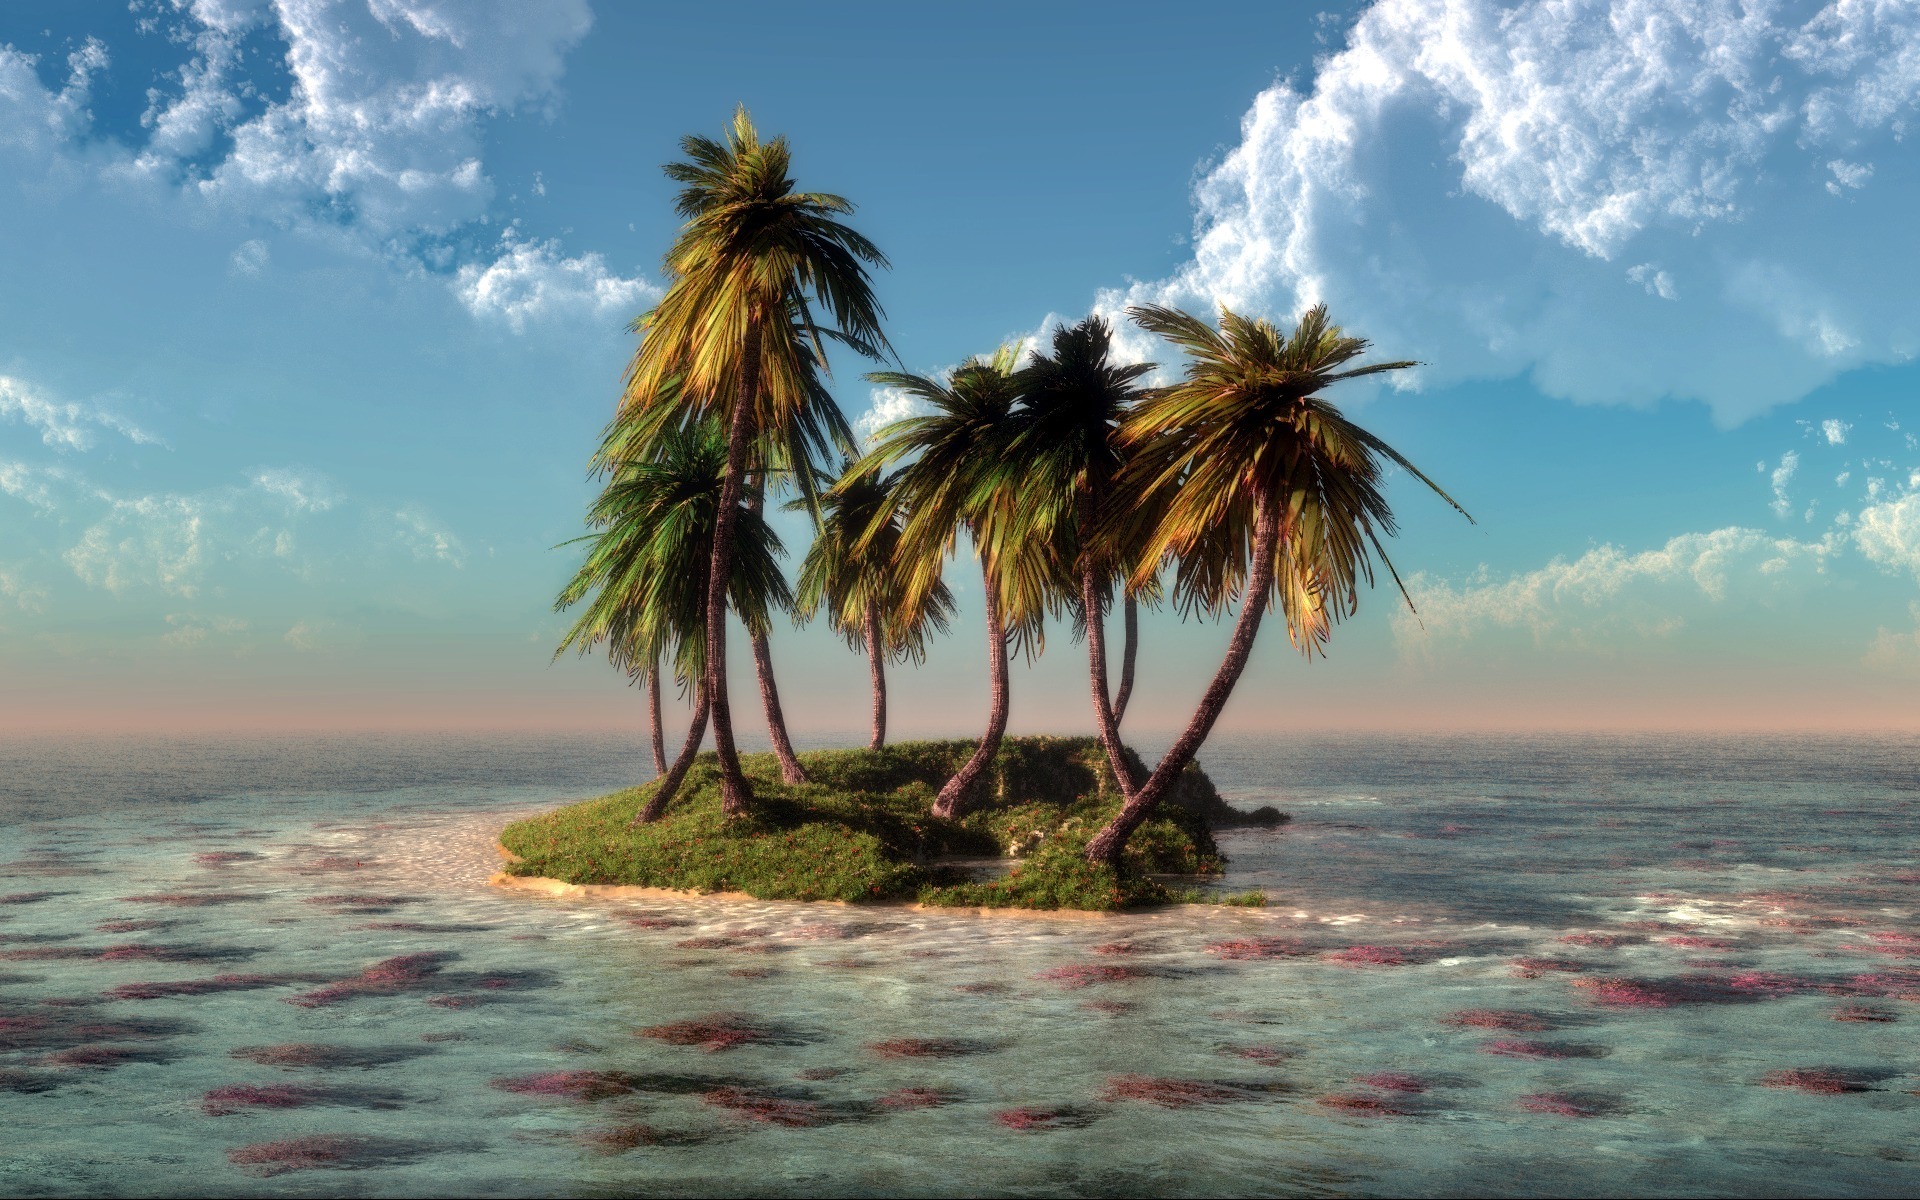 Скачать обои бесплатно Пальмы, Море, Пейзаж картинка на рабочий стол ПК